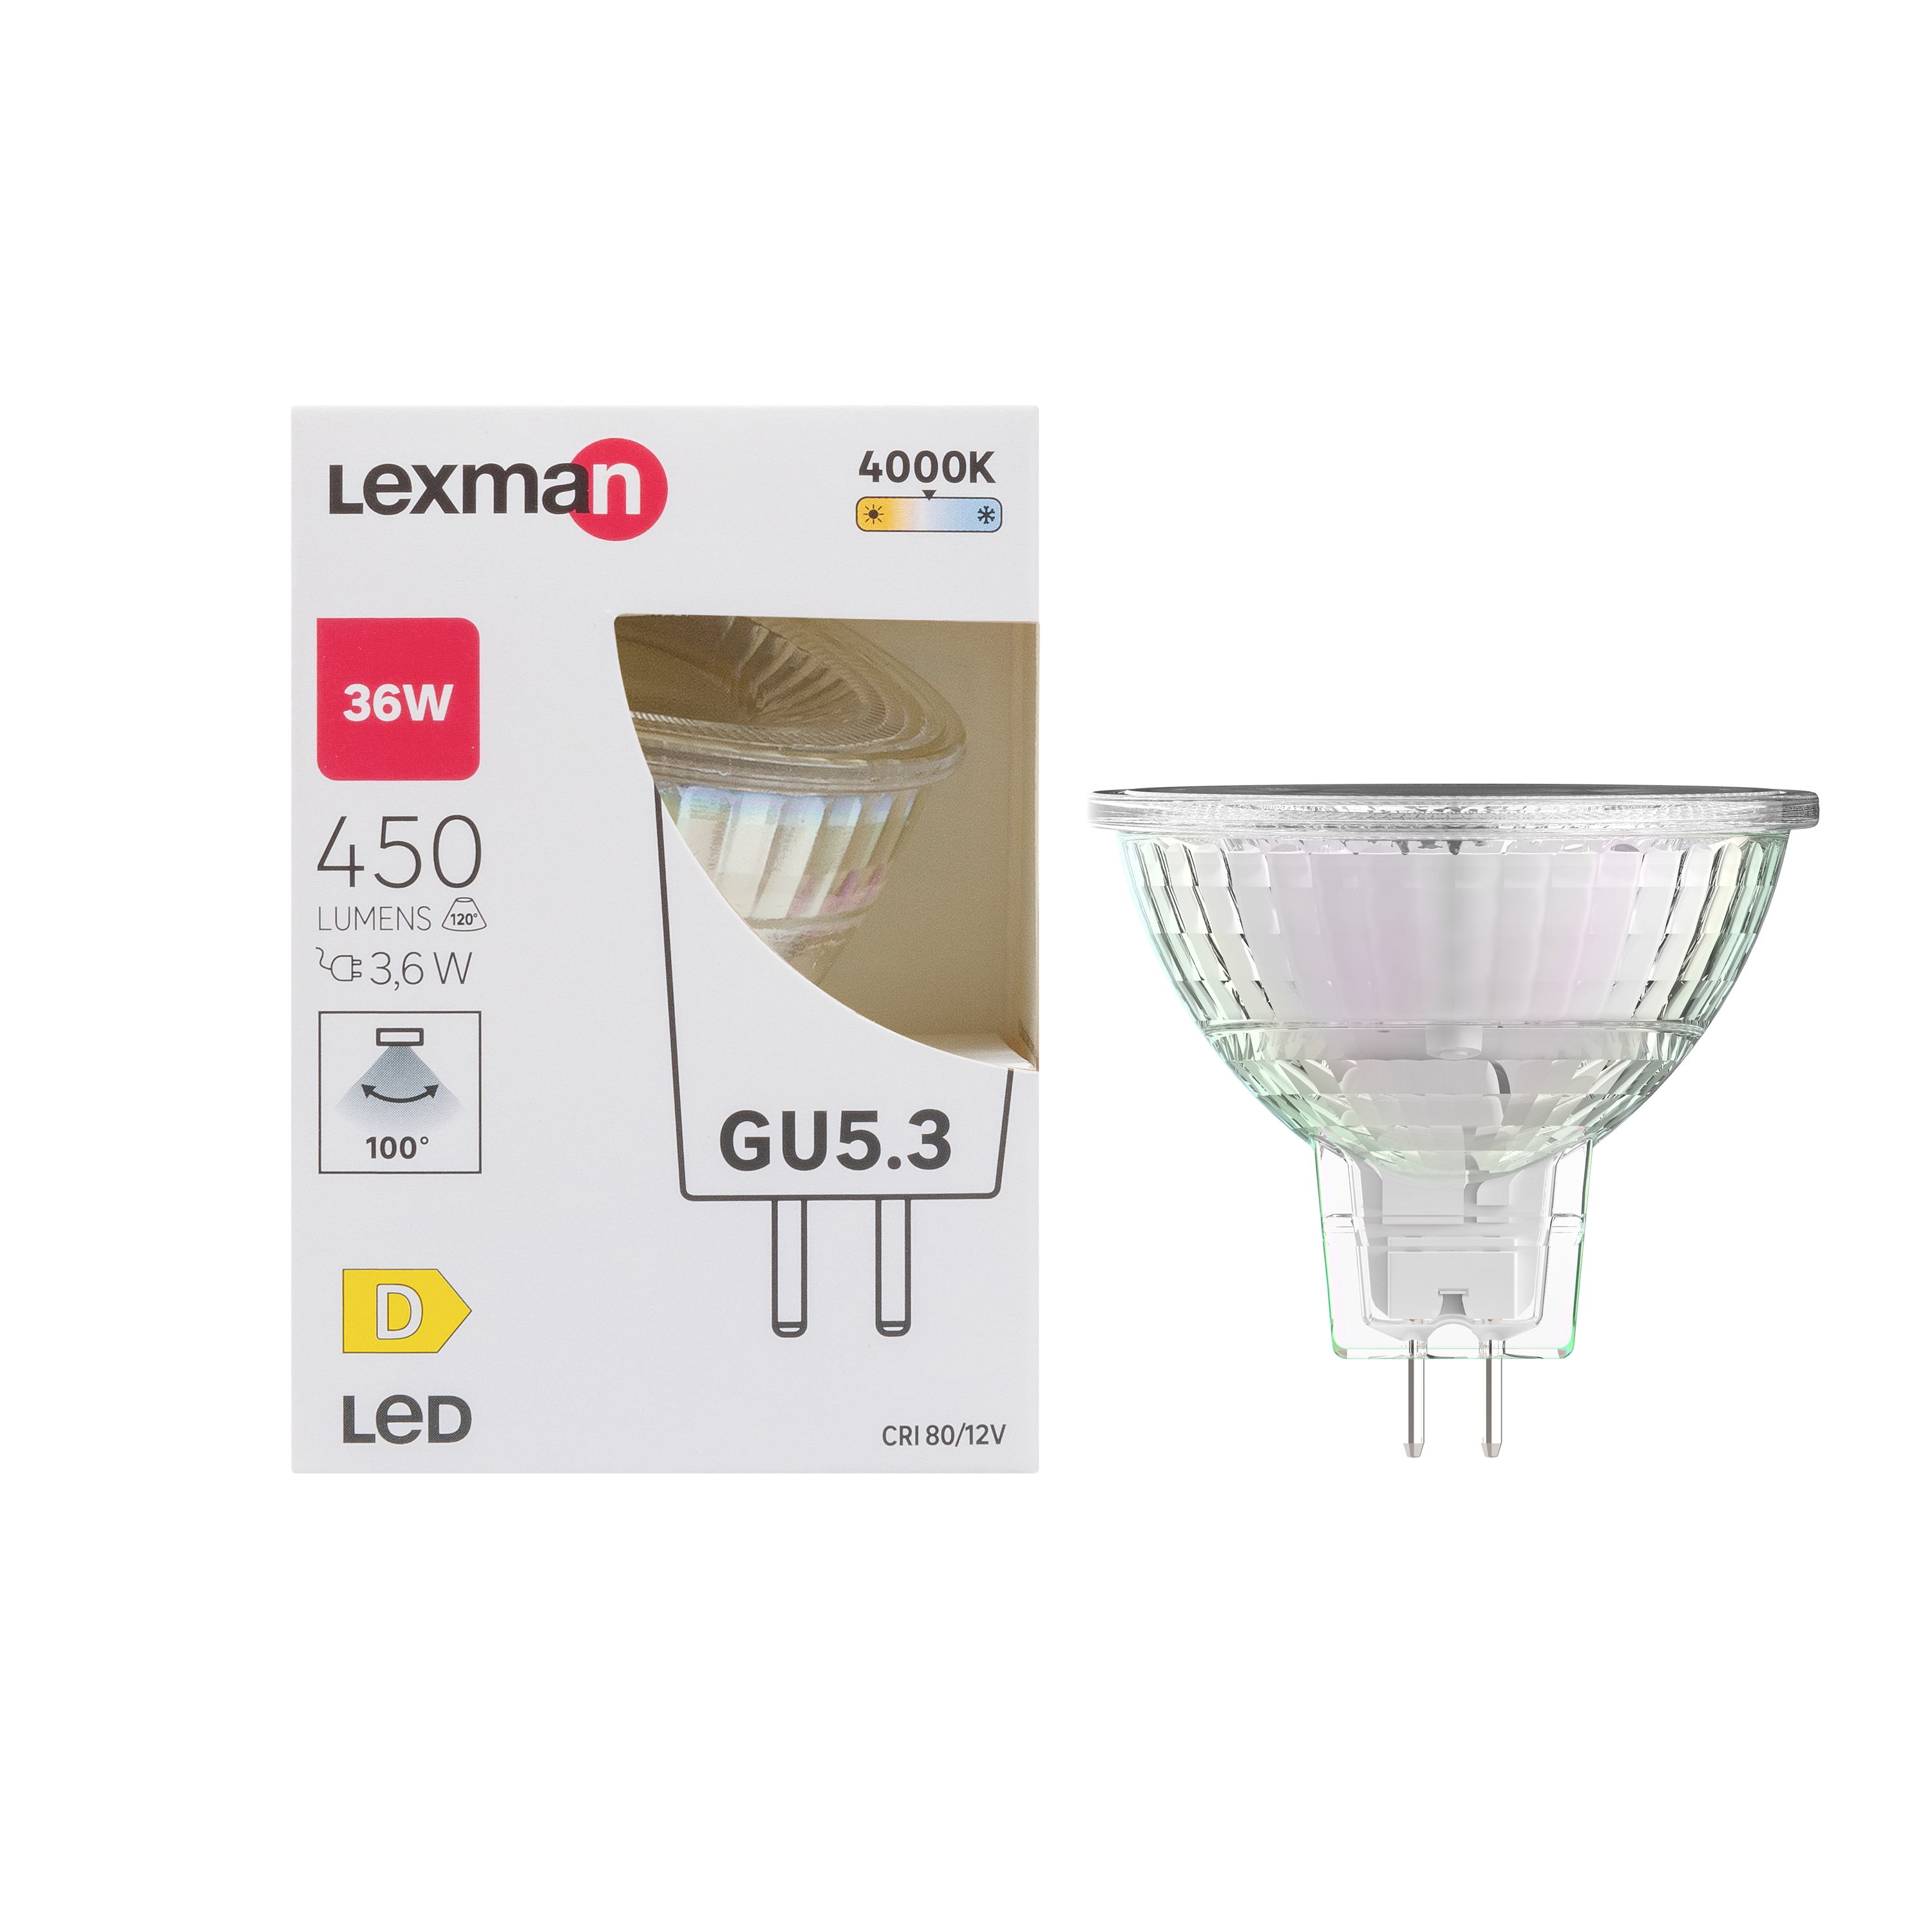 3 ampoules led réflecteur GU5.3, 100°, 450 Lm = 35 W, blanc neutre, LEXMAN